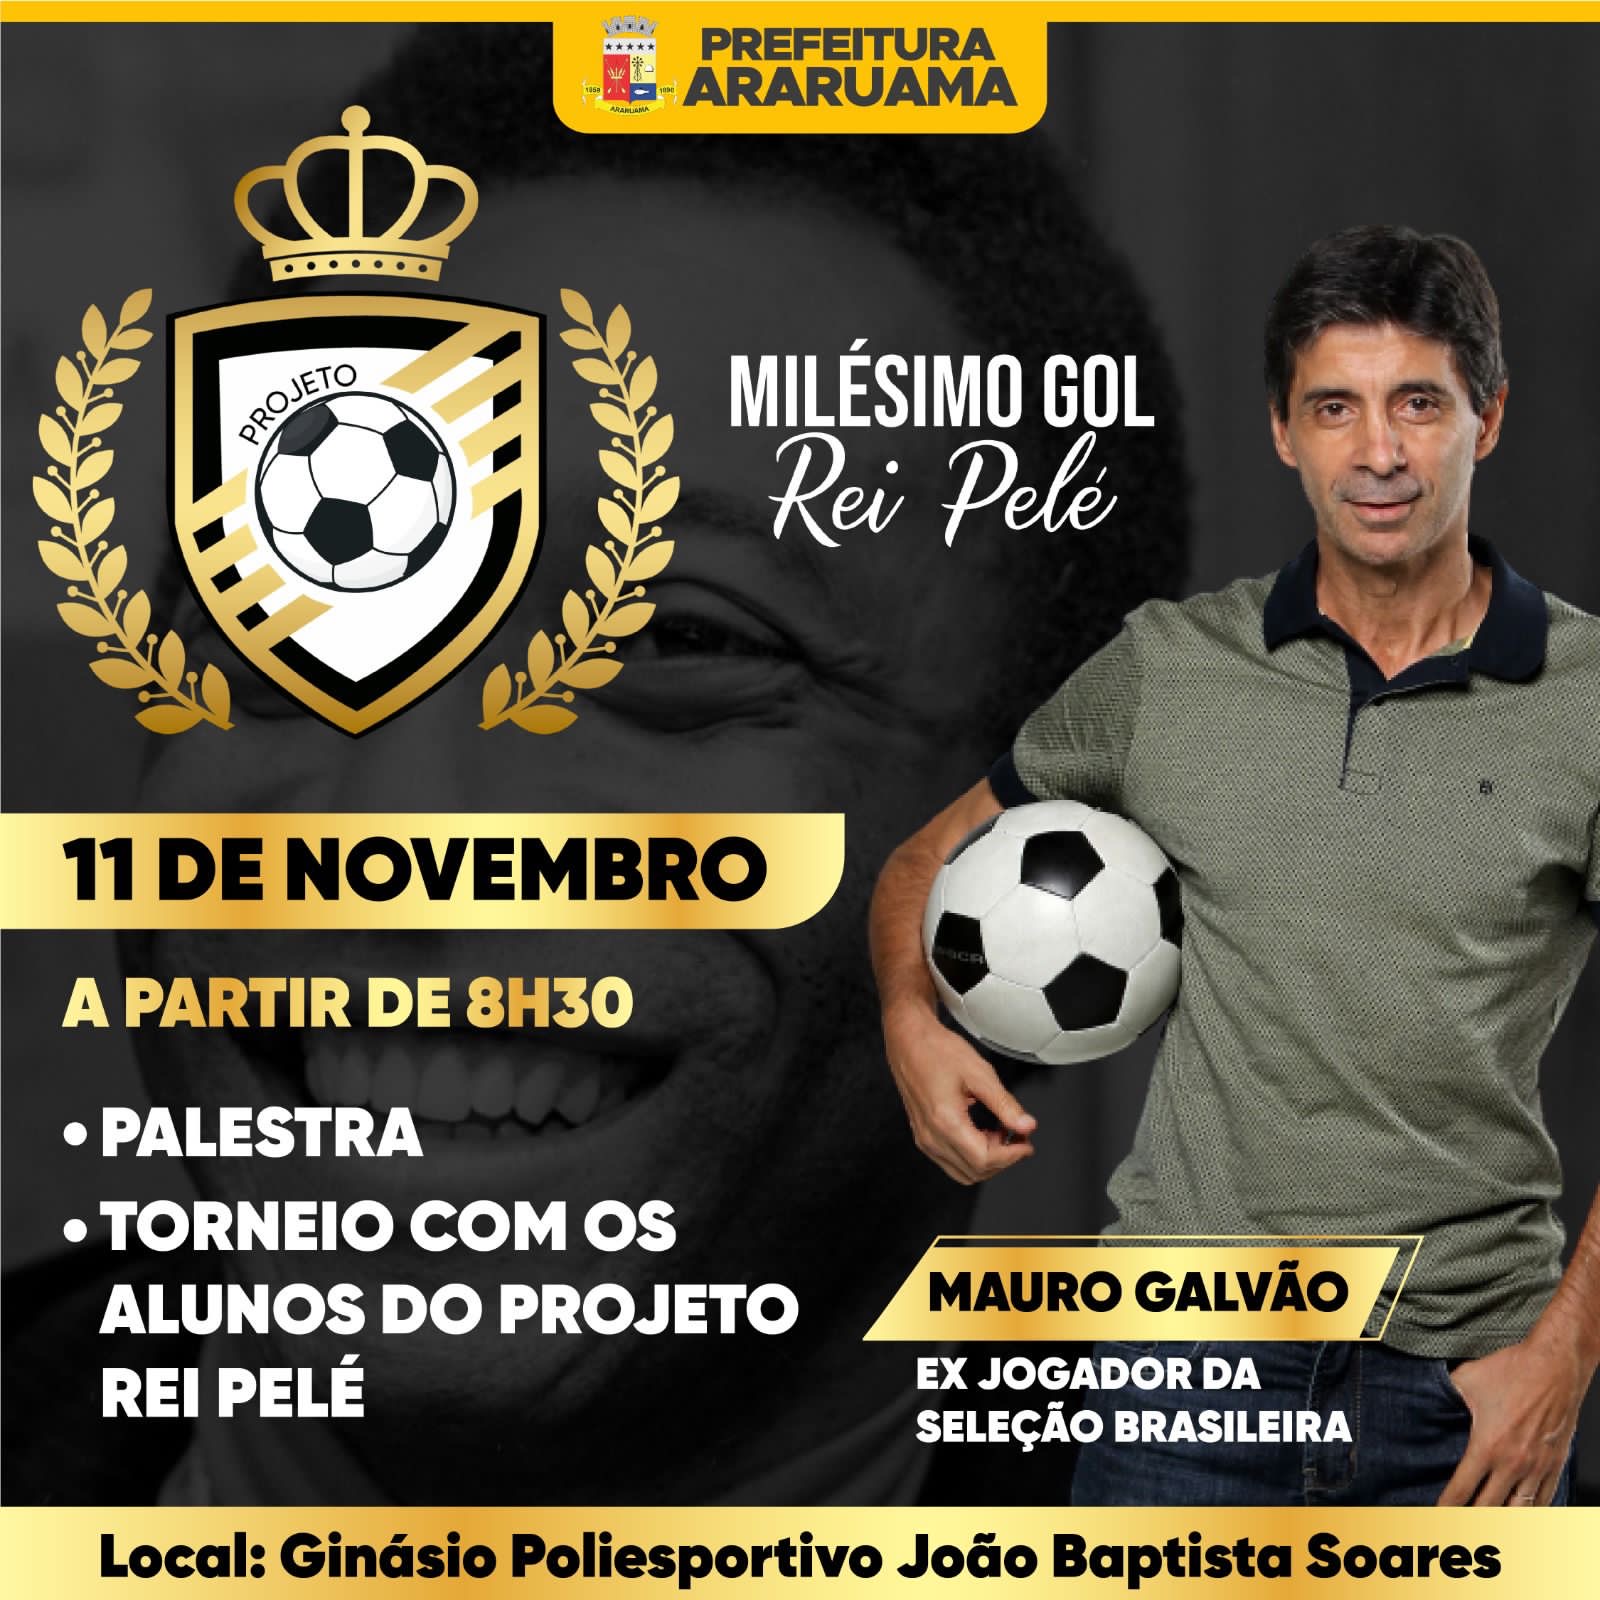 Ex-jogador da Seleção Brasileira de Futebol, Mauro Galvão, vai dar palestra para alunos do projeto “Milésimo Gol Rei Pelé”